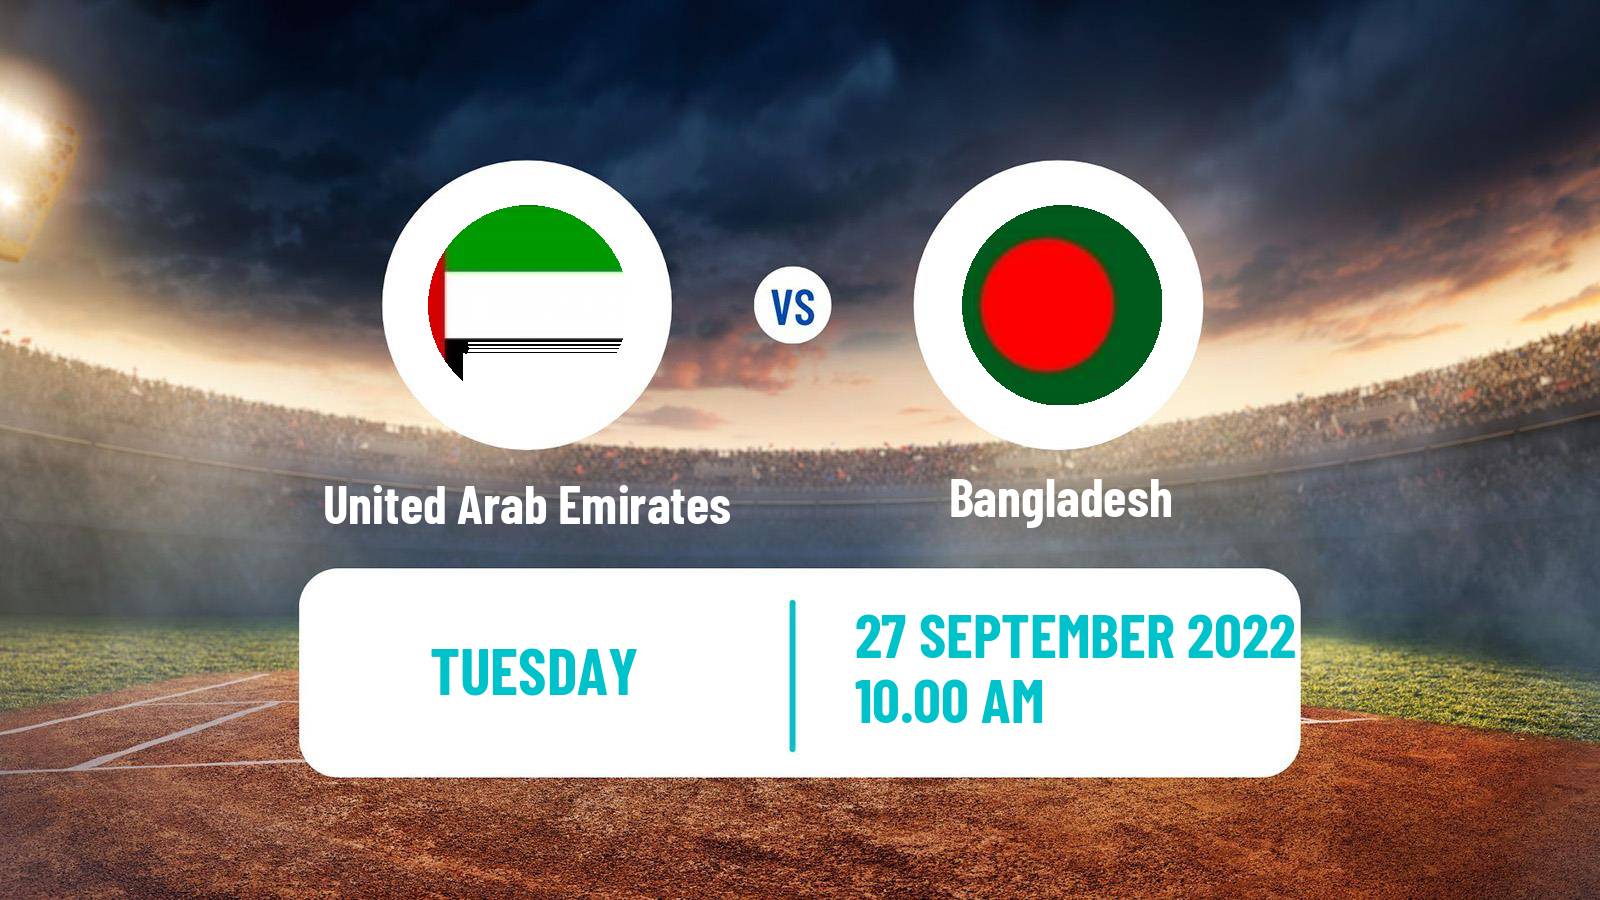 Cricket Twenty20 International United Arab Emirates - Bangladesh